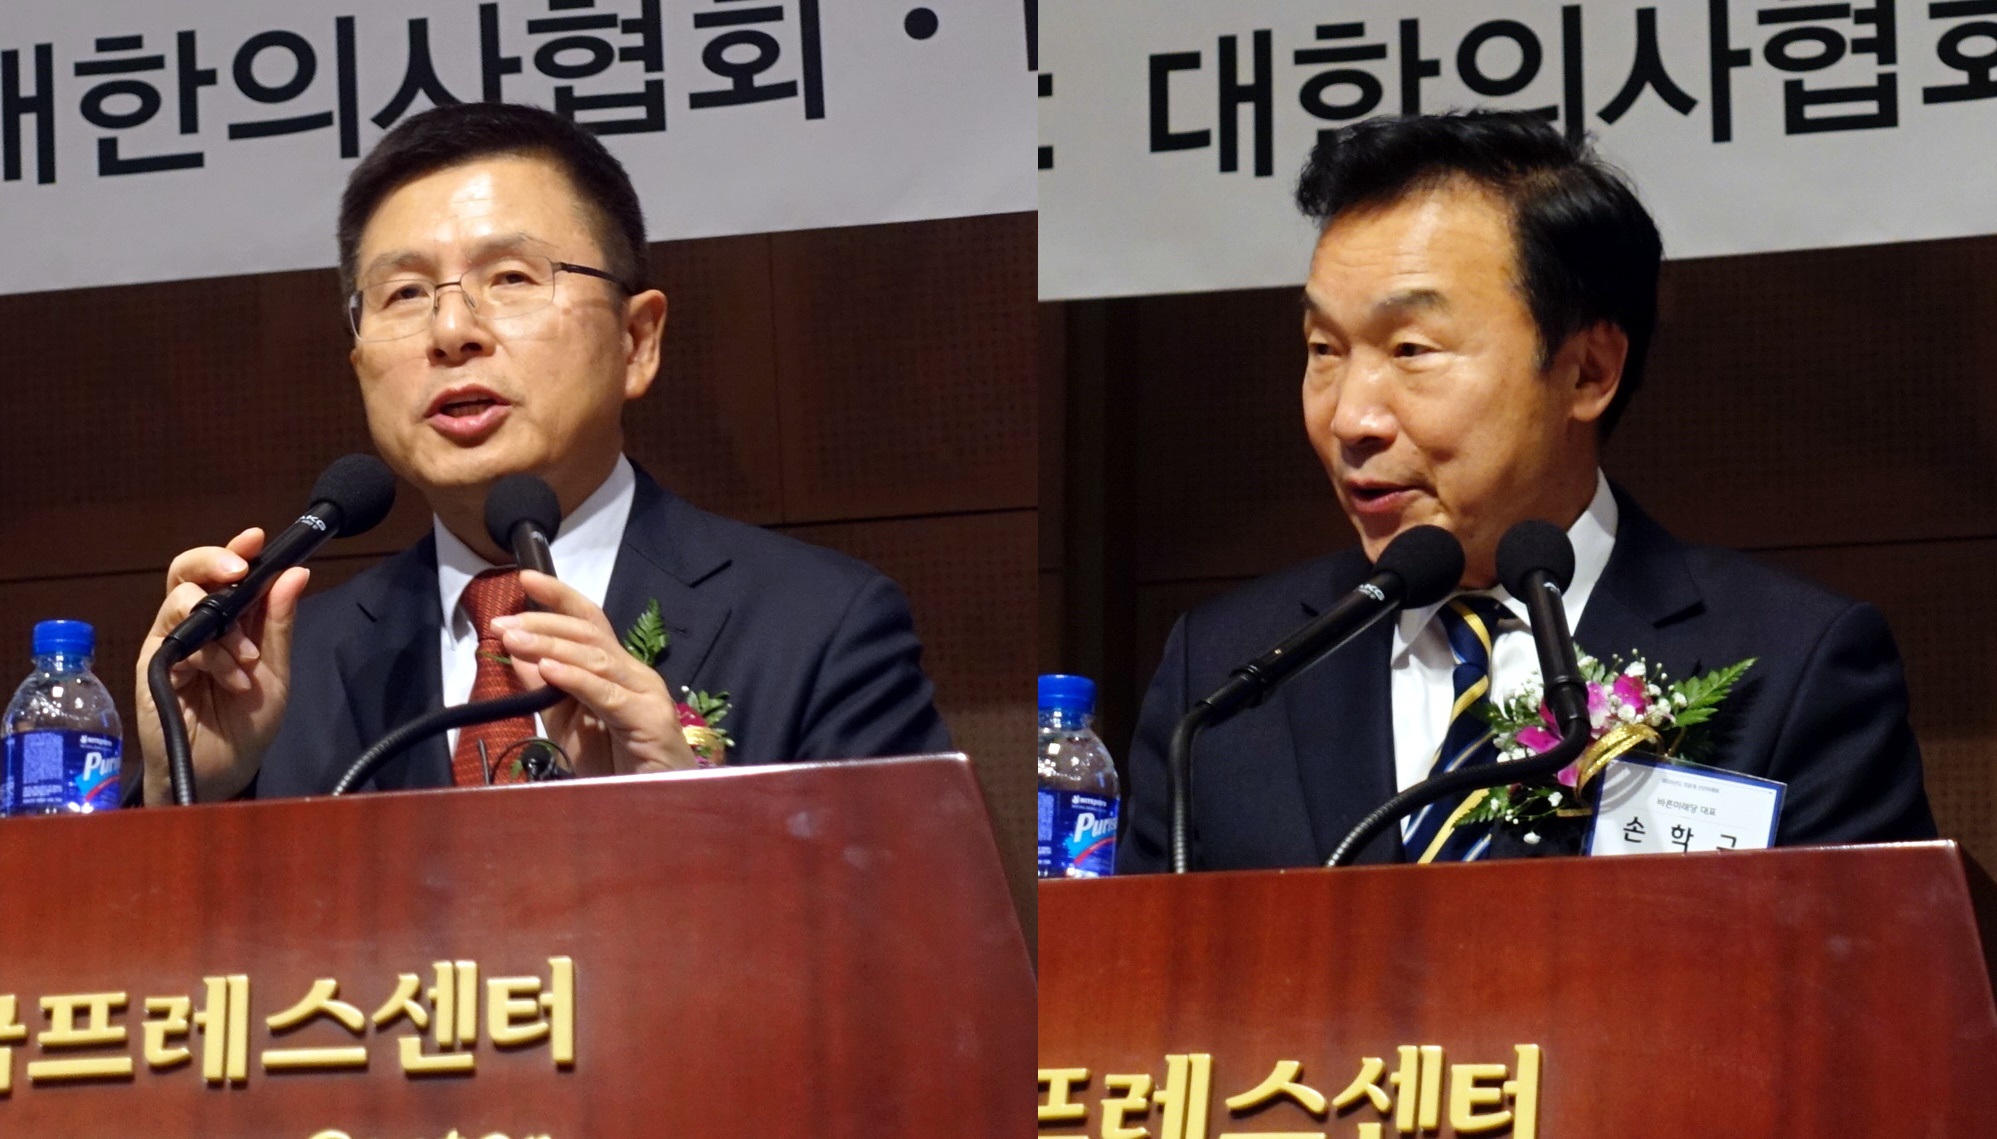 황교안 한국당대표(왼쪽)와 손학교 바른미래당대표